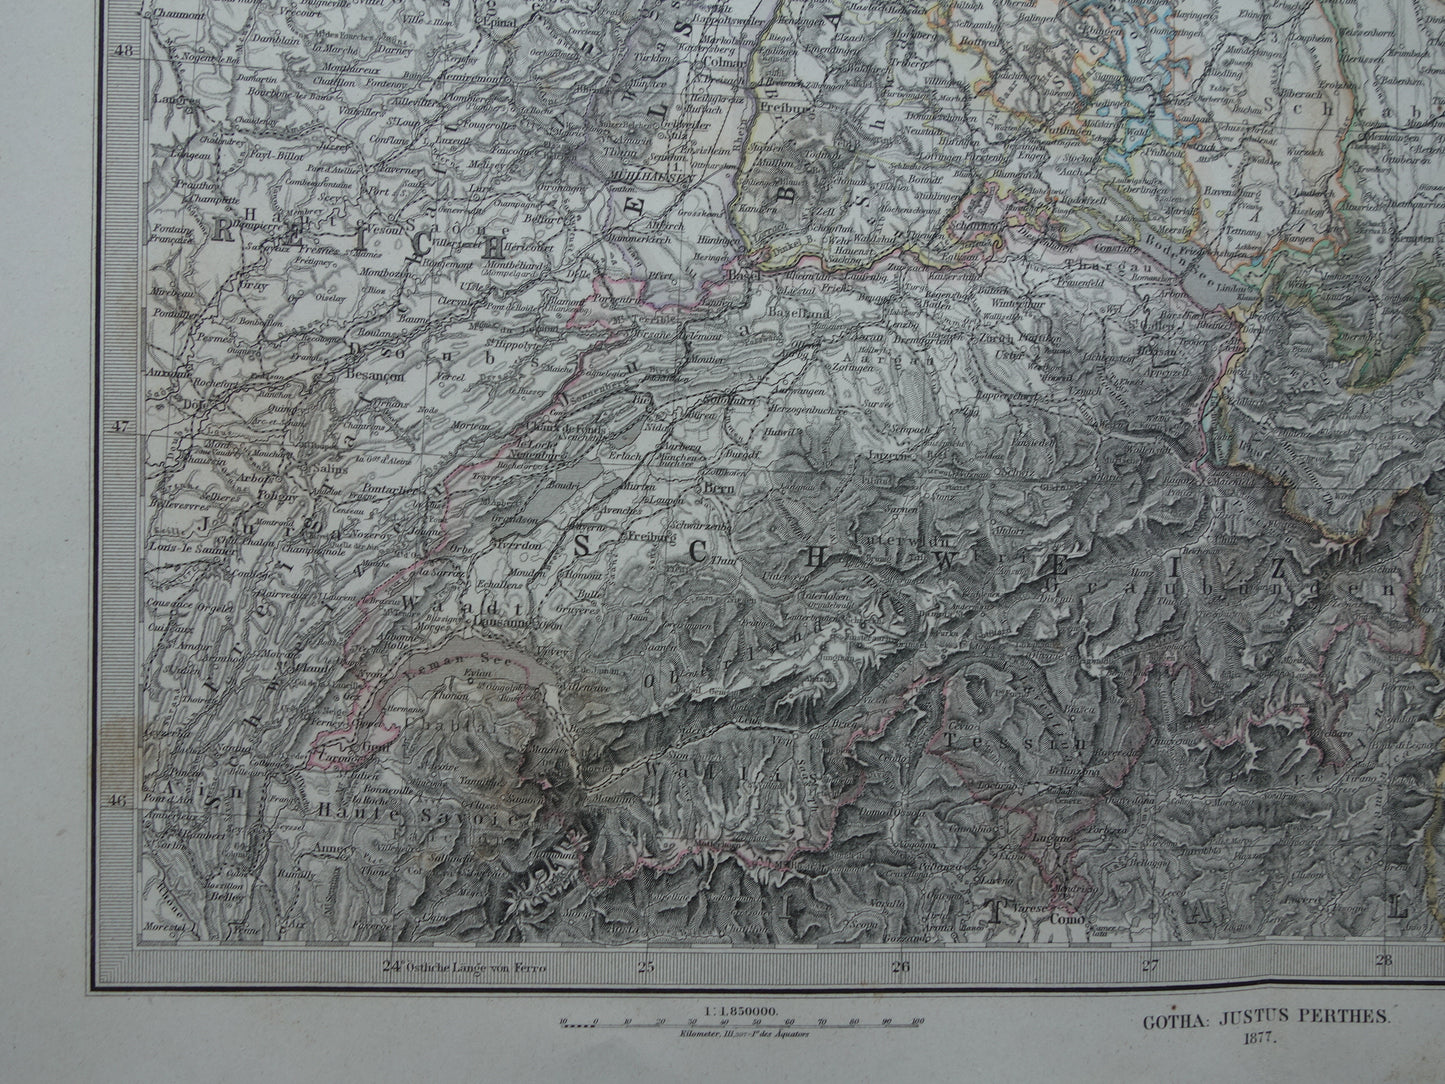 Oude landkaart van Zuid-Duitsland en Zwitserland originele 145+ jaar oude antieke kaart Elzas Lotharingen Württemberg Beieren